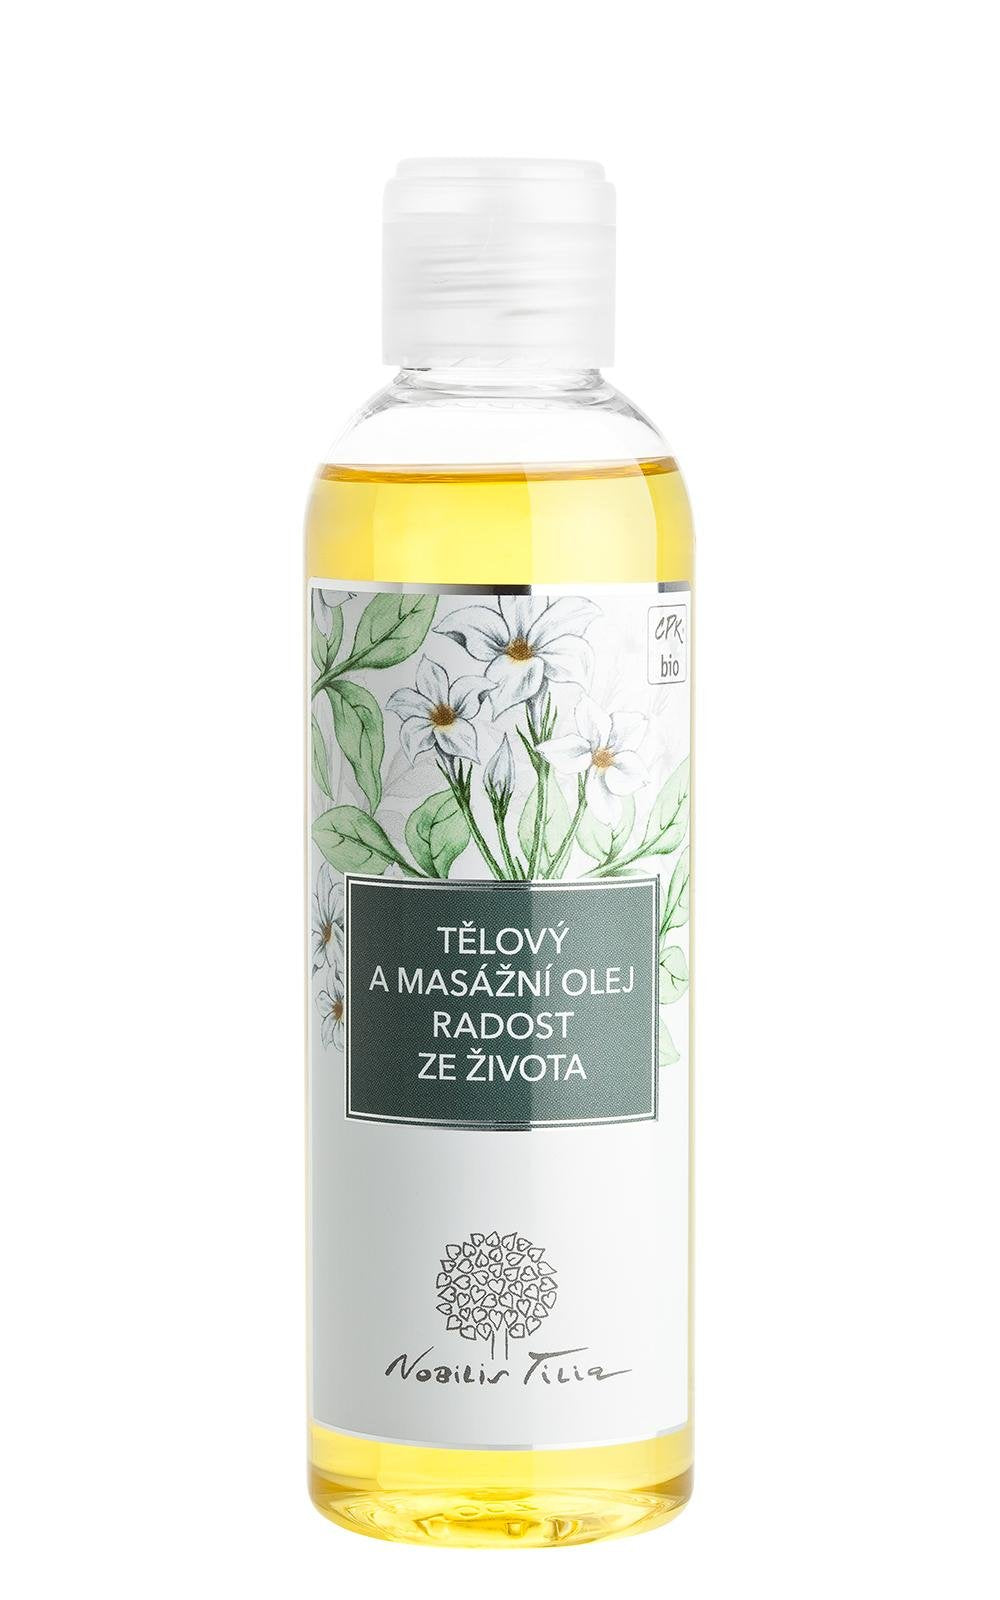 Nobilis Tilia Tělový a masážní olej Radost ze života BIO (200 ml) Nobilis Tilia